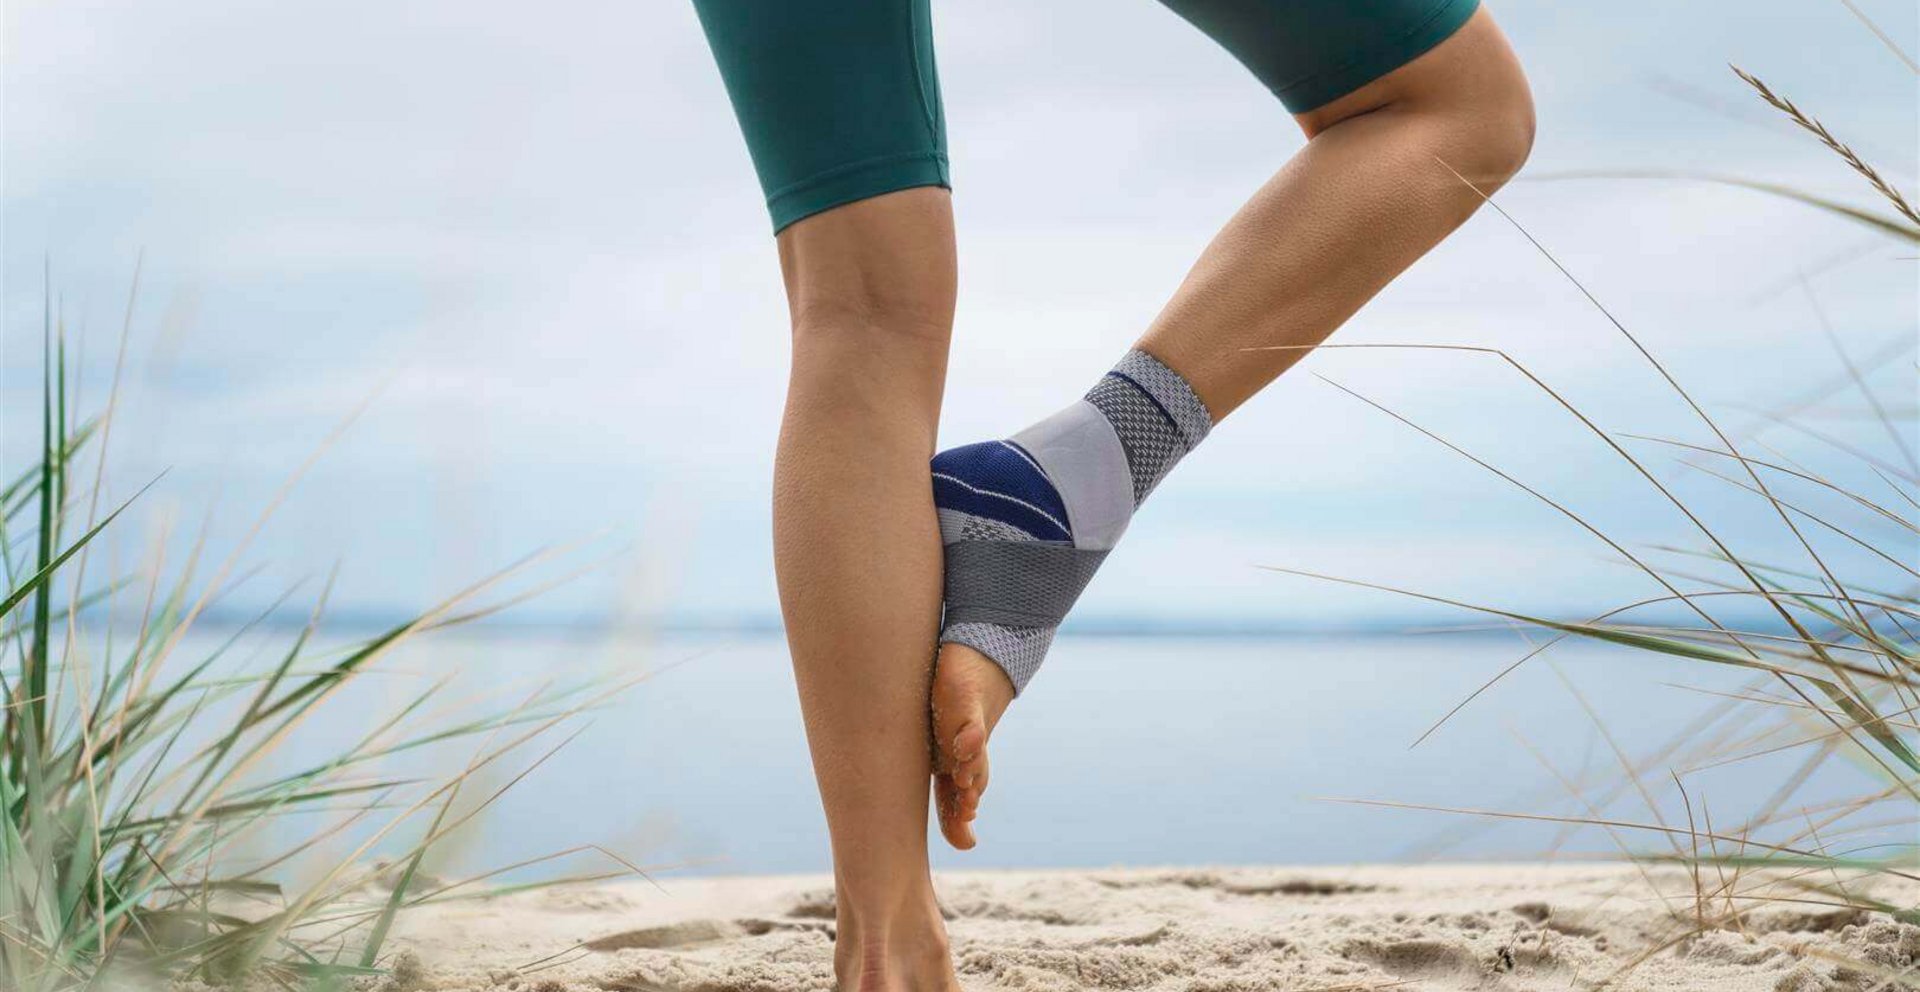 Bildausschnitt einer Frau, die am Strand eine Yoga-Pose einnimmt. Sie trägt die MalleoTrain Sprunggelenkbandage von Bauerfeind, um ihr Sprunggelenk zu stabilisieren.